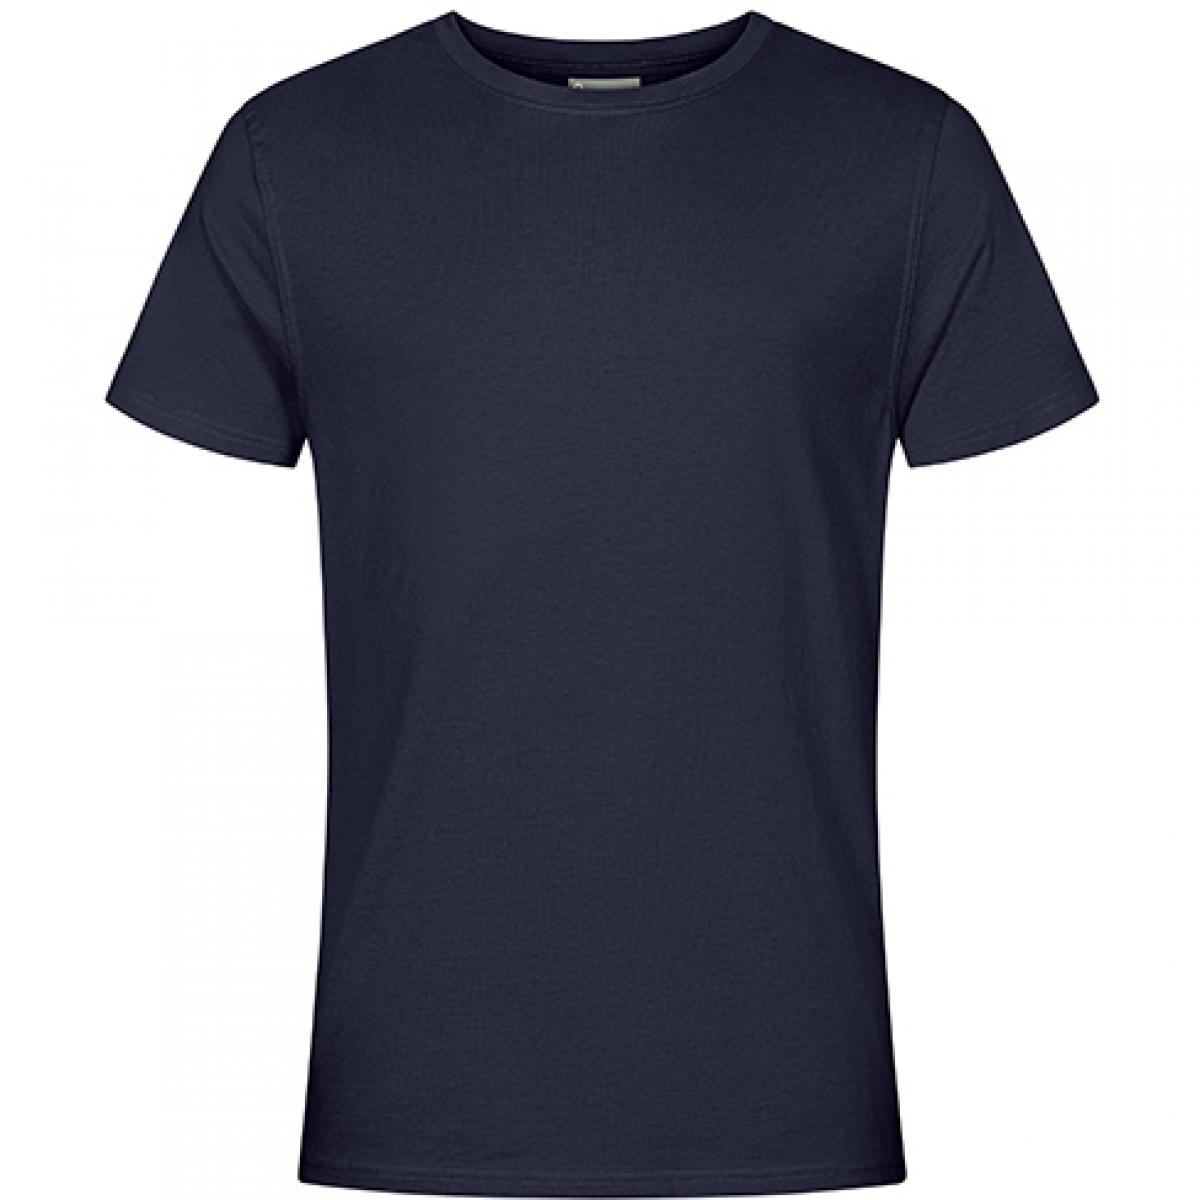 Hersteller: EXCD by Promodoro Herstellernummer: 3077 Artikelbezeichnung: Herren T-Shirt, Single-Jersey Farbe: Navy